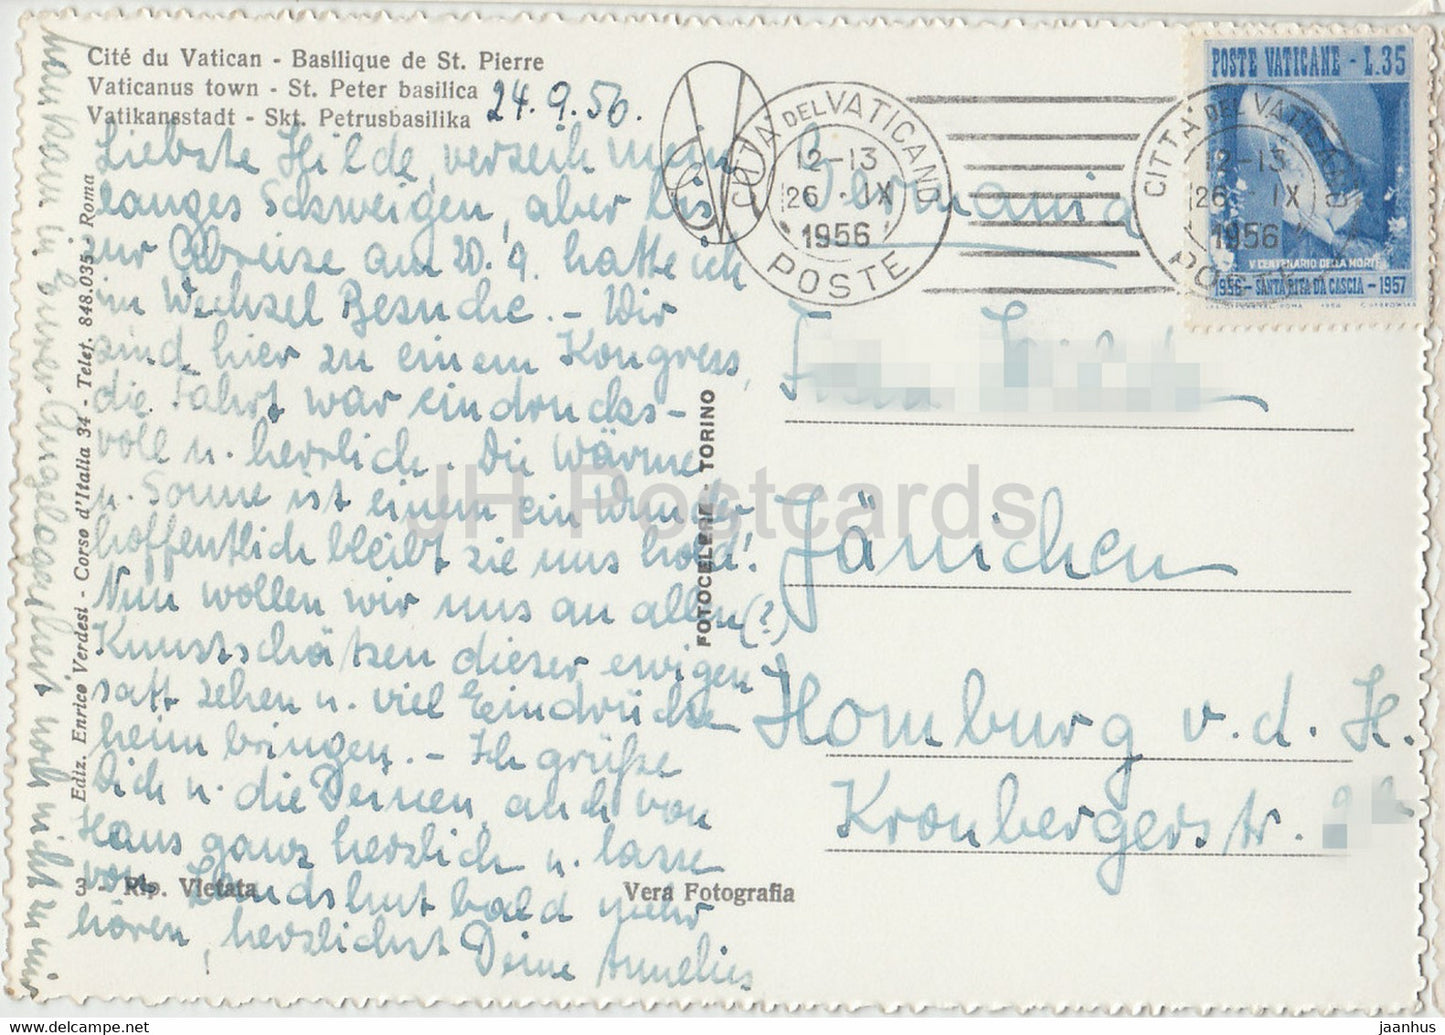 Citta del Vaticano - Basilica di S Pietro - old postcard - 1956 - Vatican - used